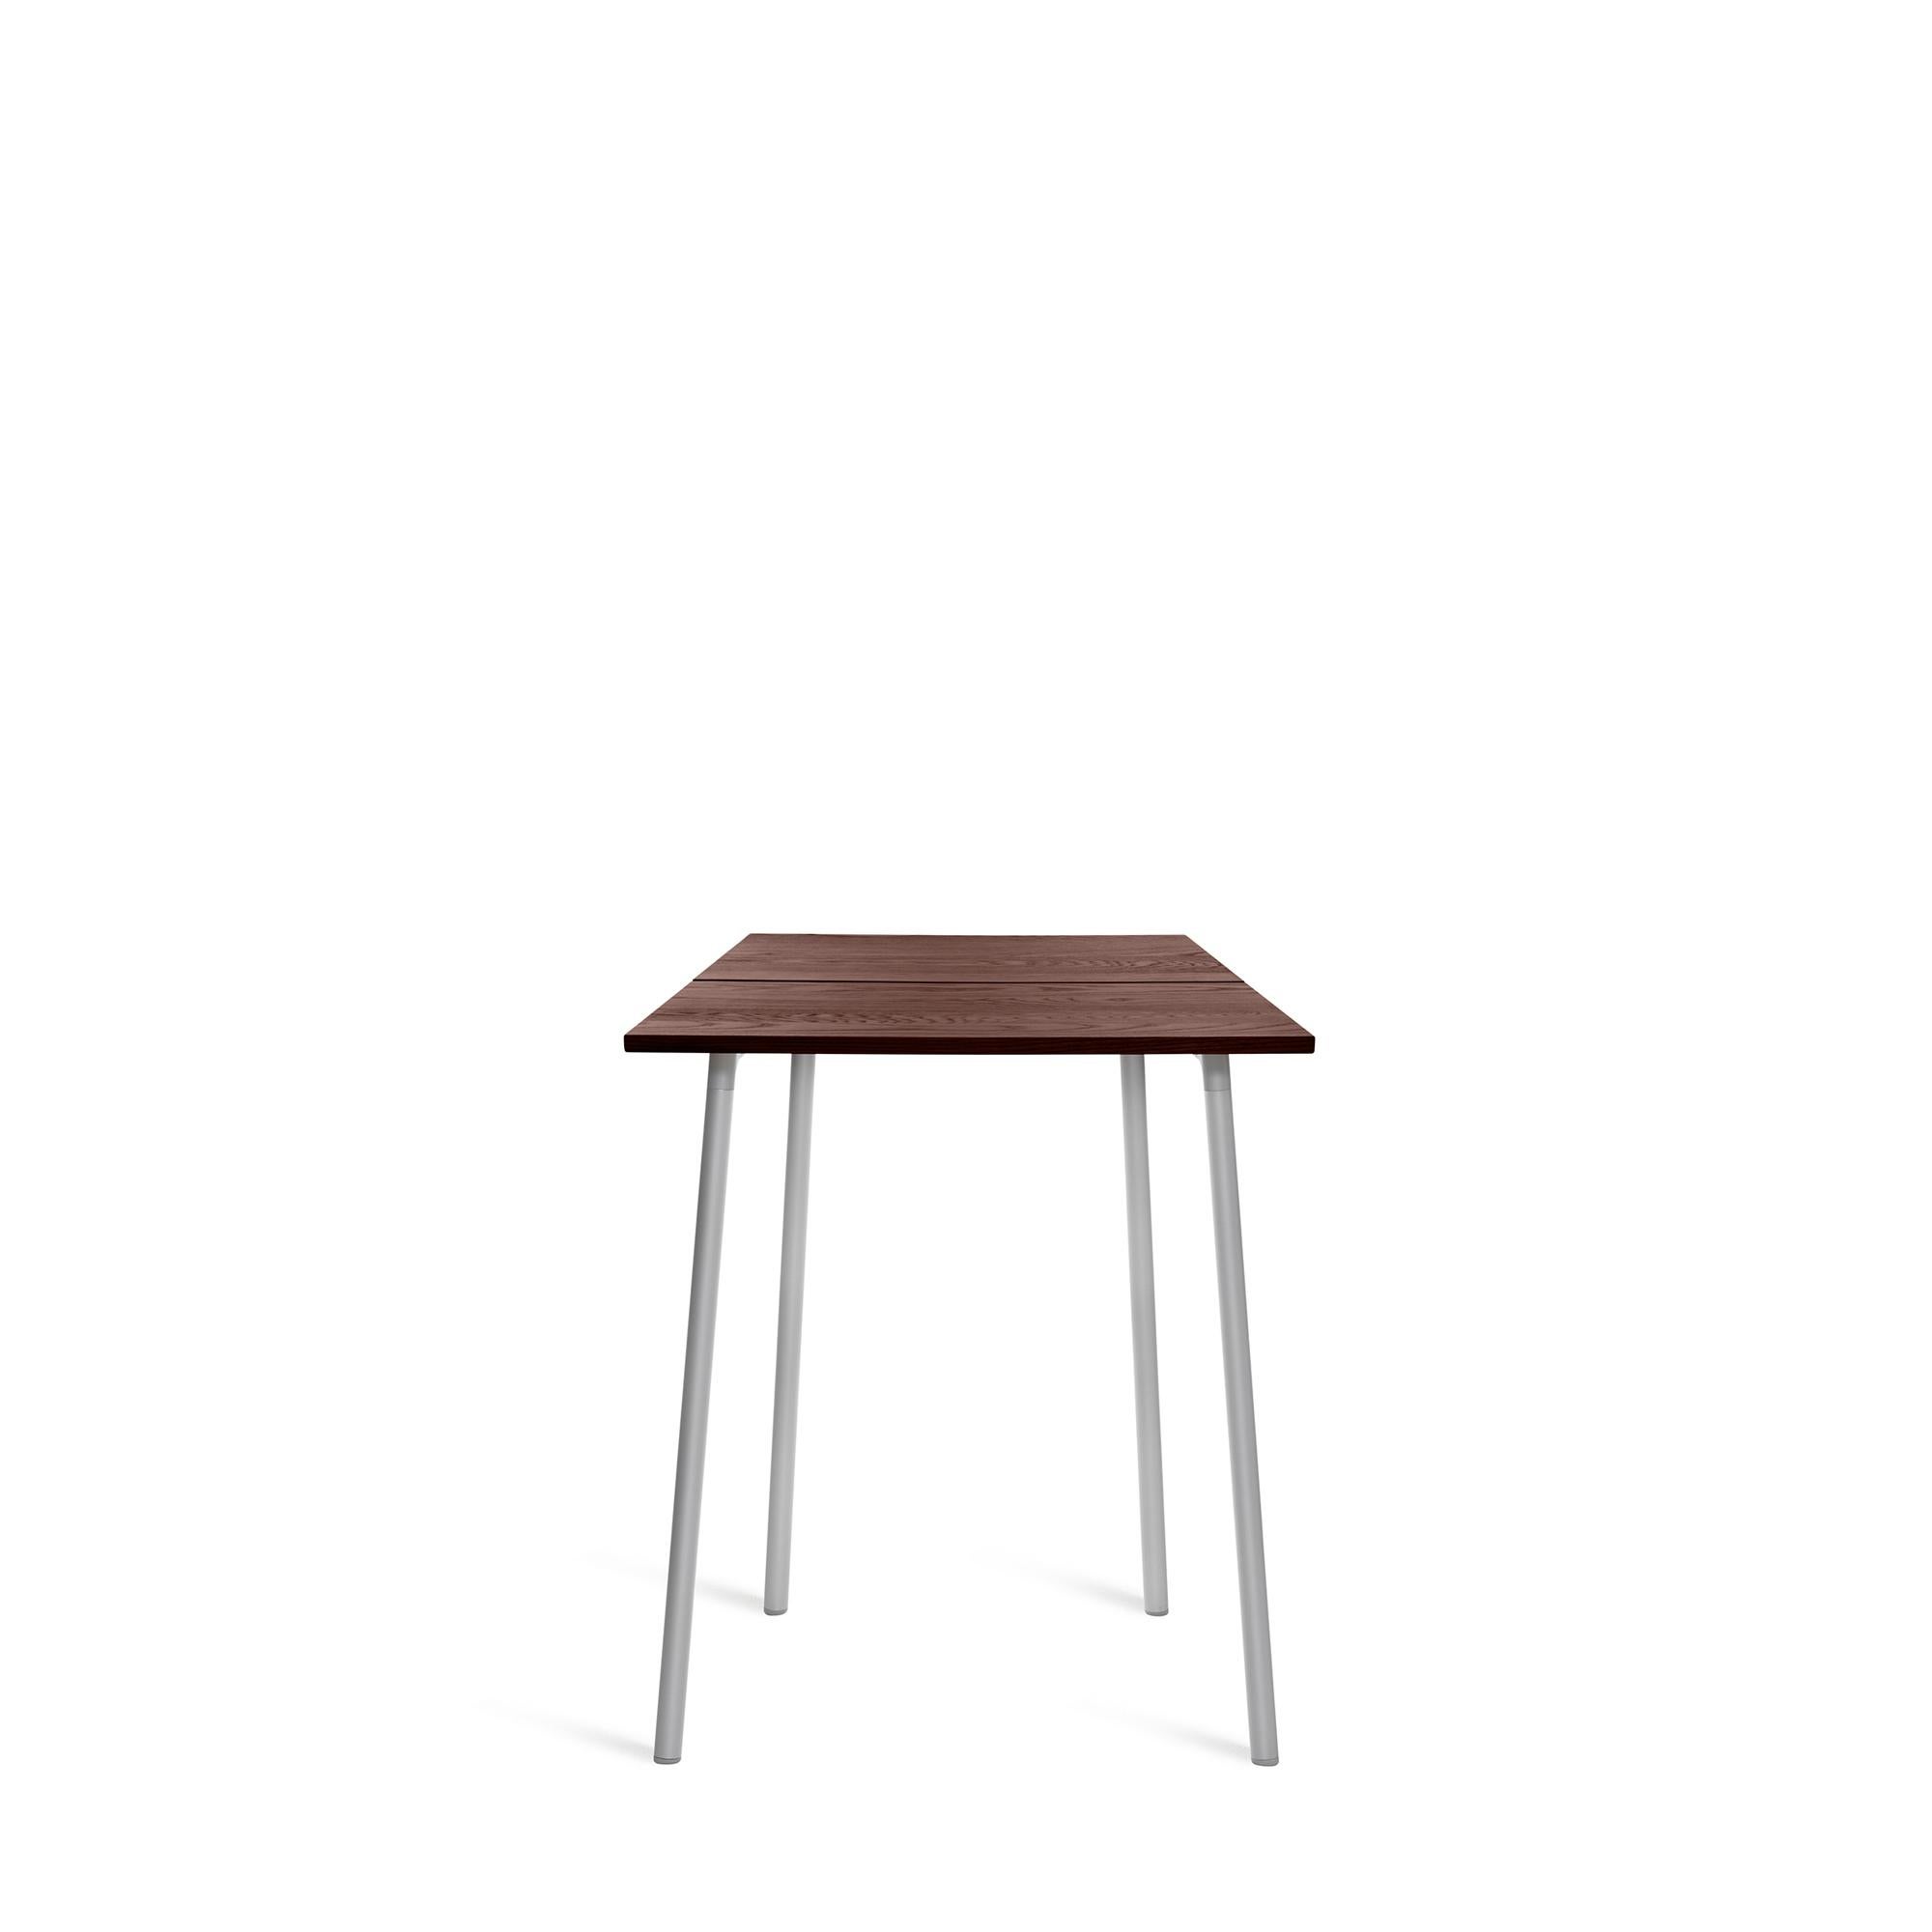 Run est une collection de tables, de bancs et d'étagères de Sam Hecht et Kim Colin, concepteurs d'objets simples et sans prétention. Run trouve sans effort un équilibre dans des paysages intérieurs et extérieurs adaptés aux rencontres, aux repas, à